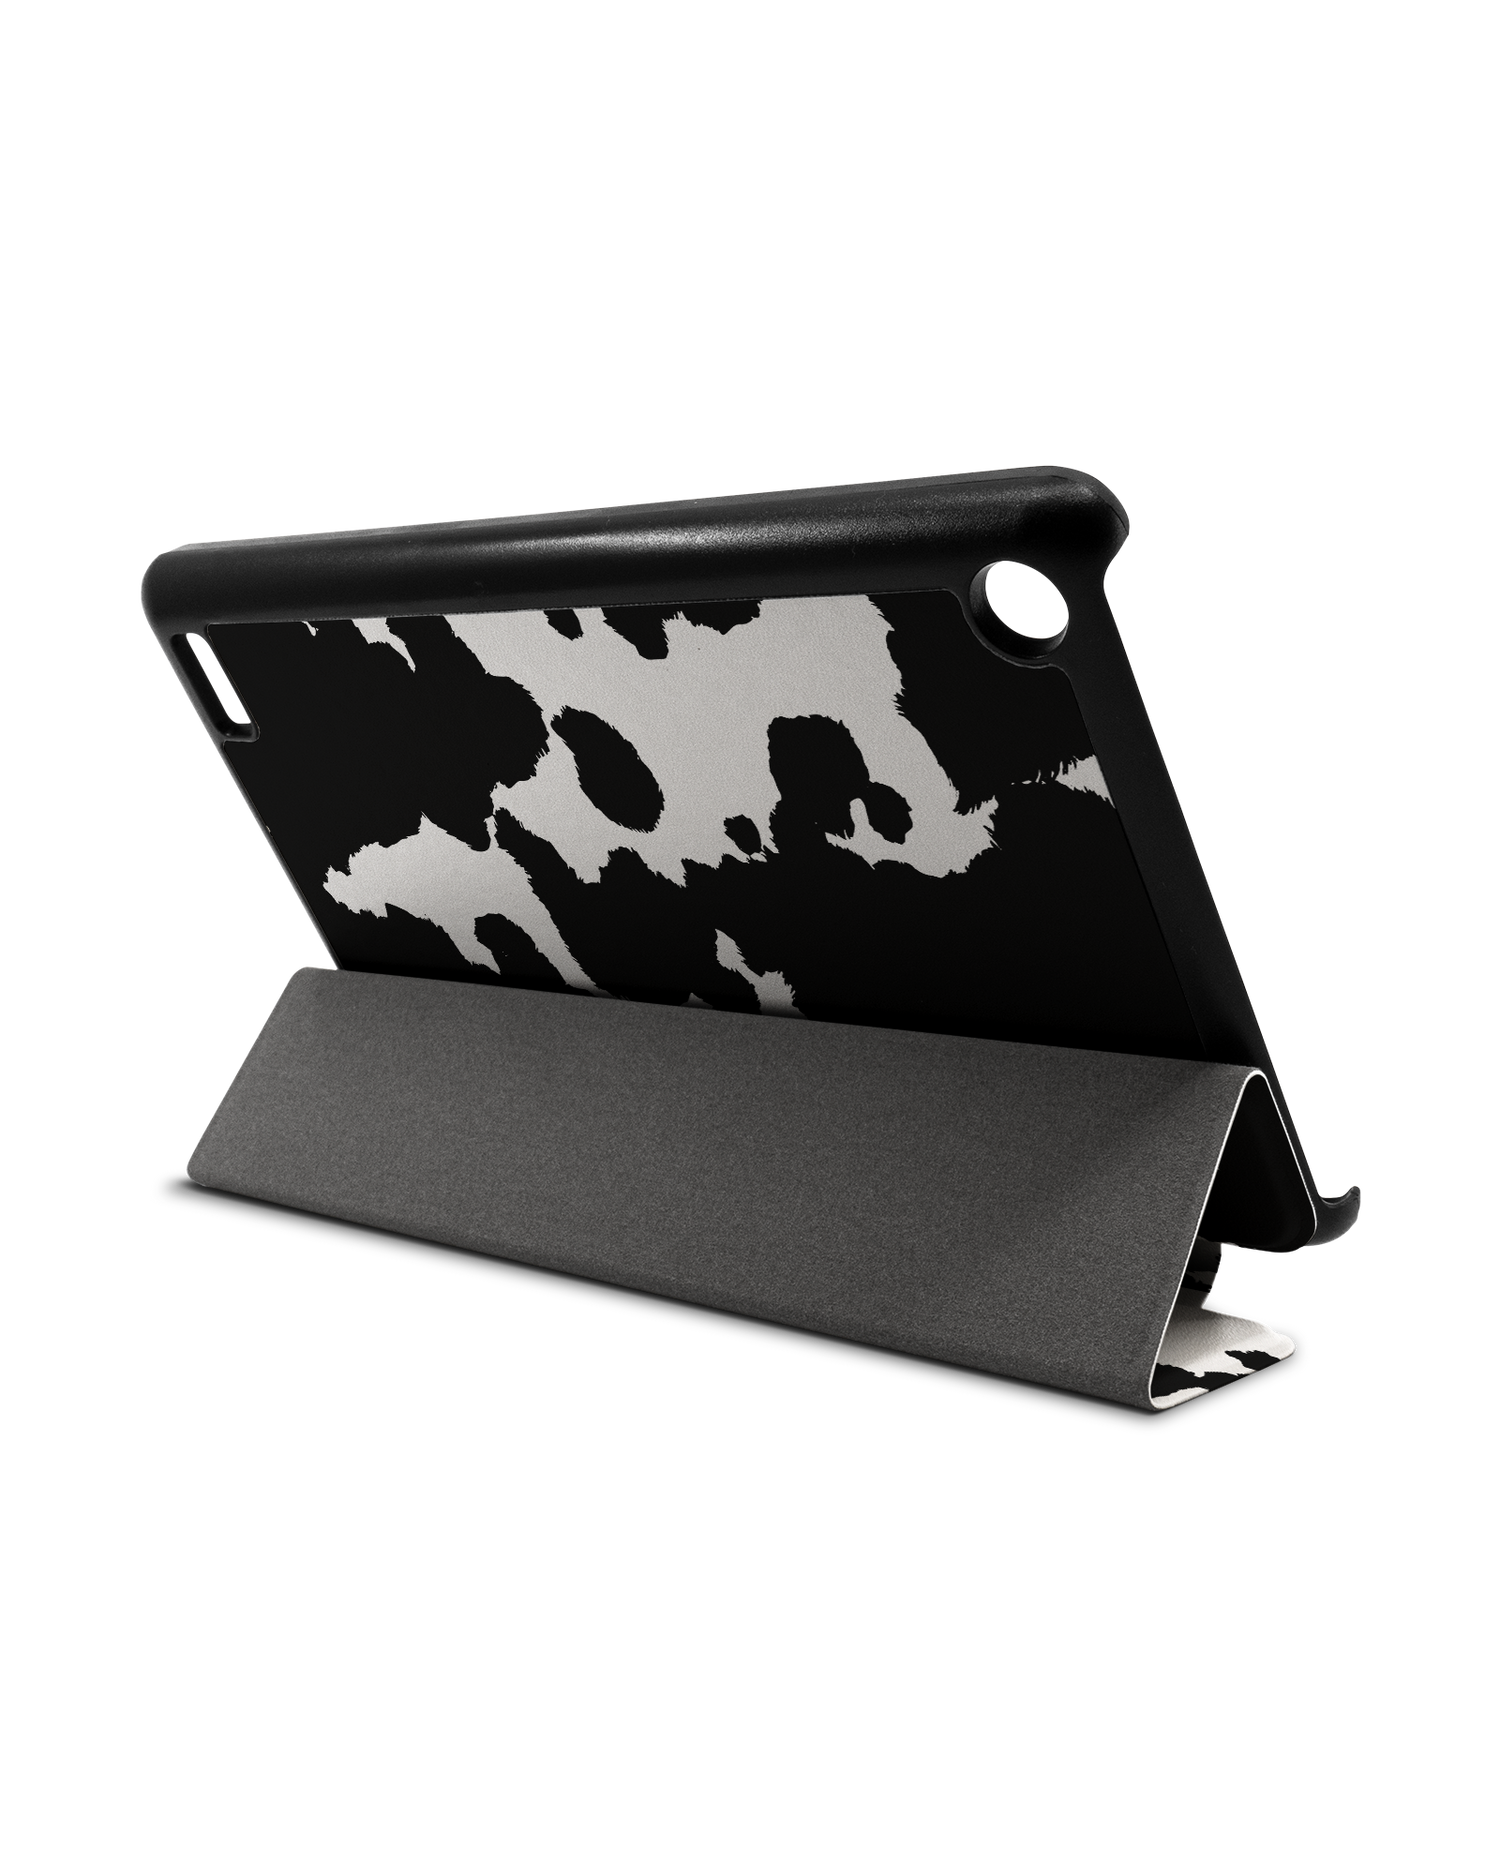 Cow Print Tablet Smart Case für Amazon Fire 7: Aufgestellt im Querformat